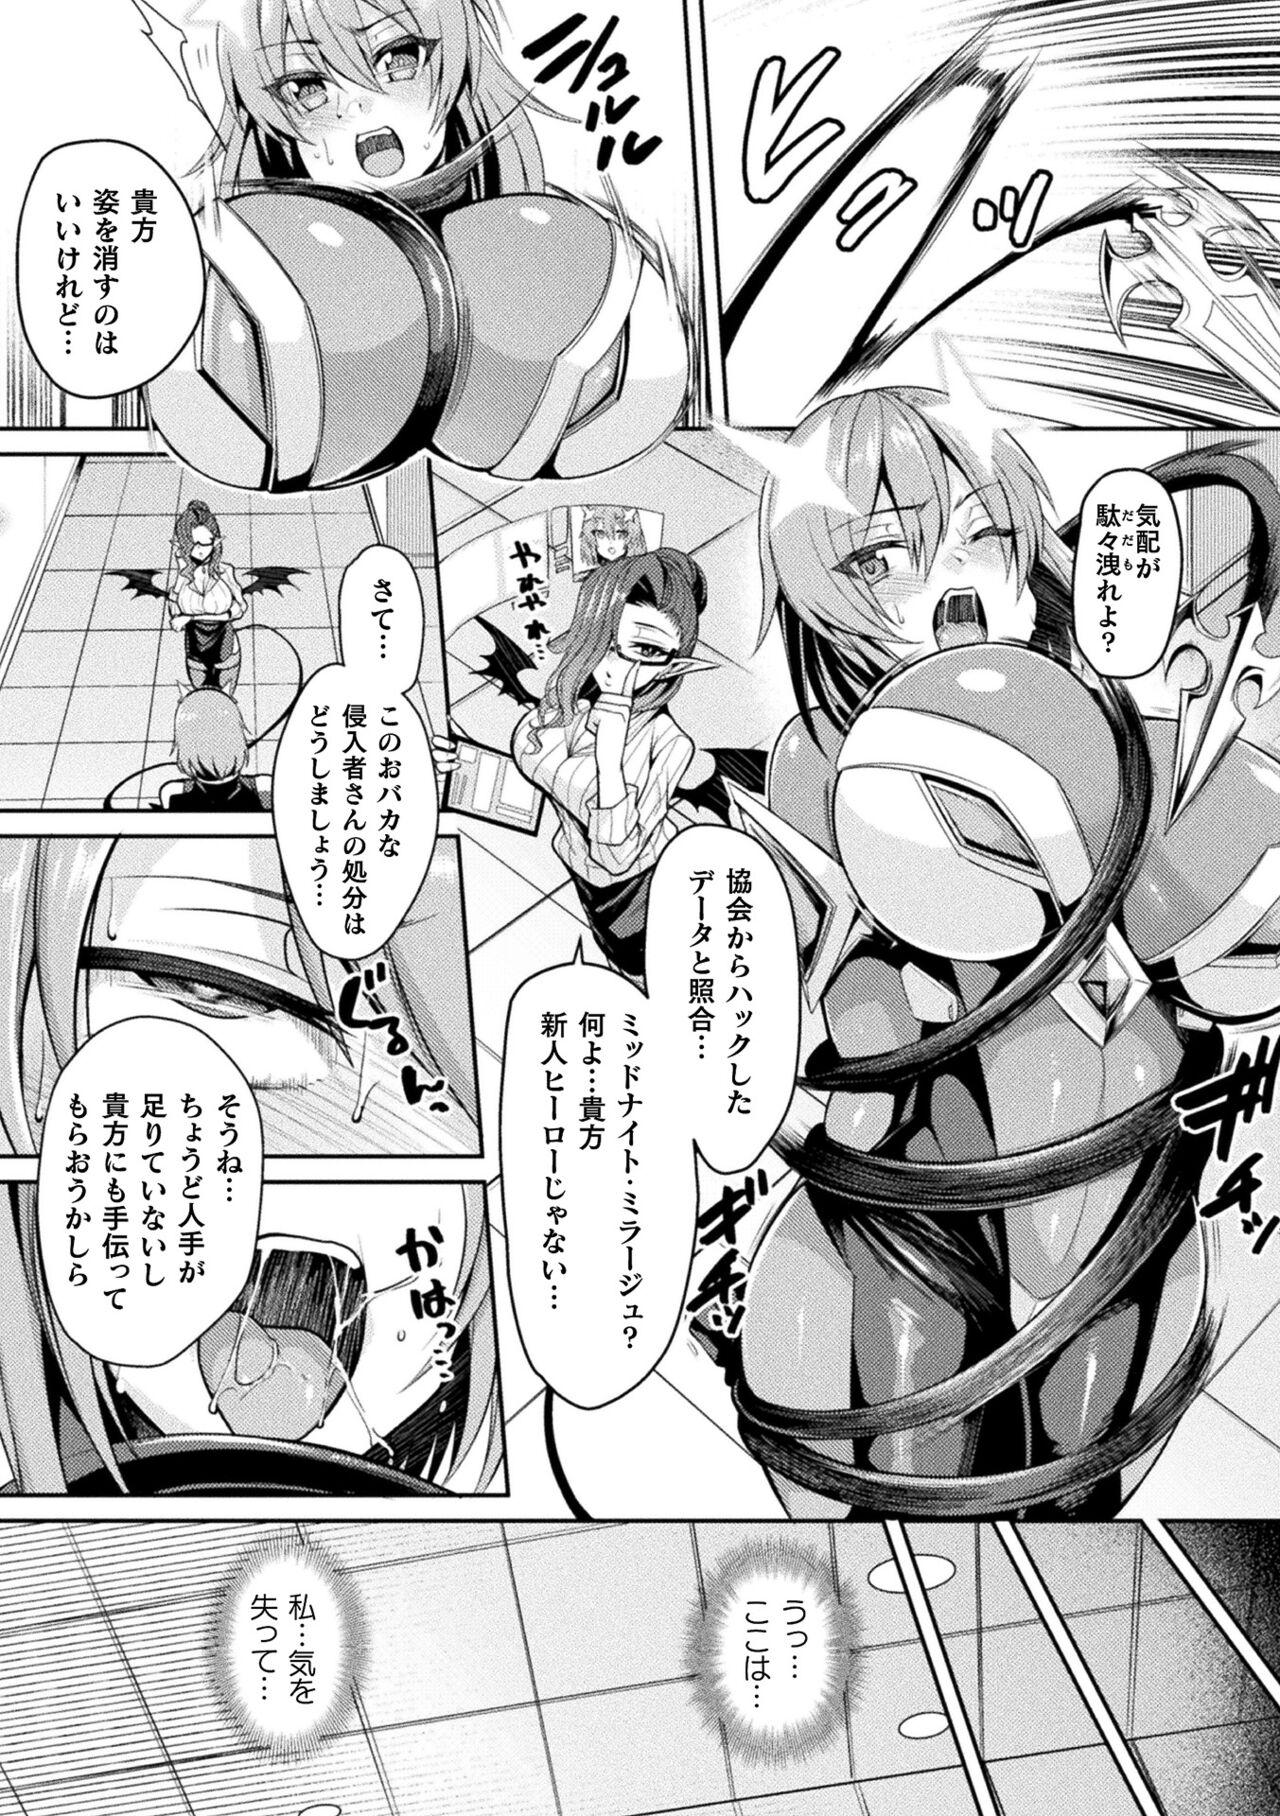 2D Comic Magazine Inmon o Tsukerareta Bishoujo-tachi ga Sanran Acme Ochi! Vol. 1 5